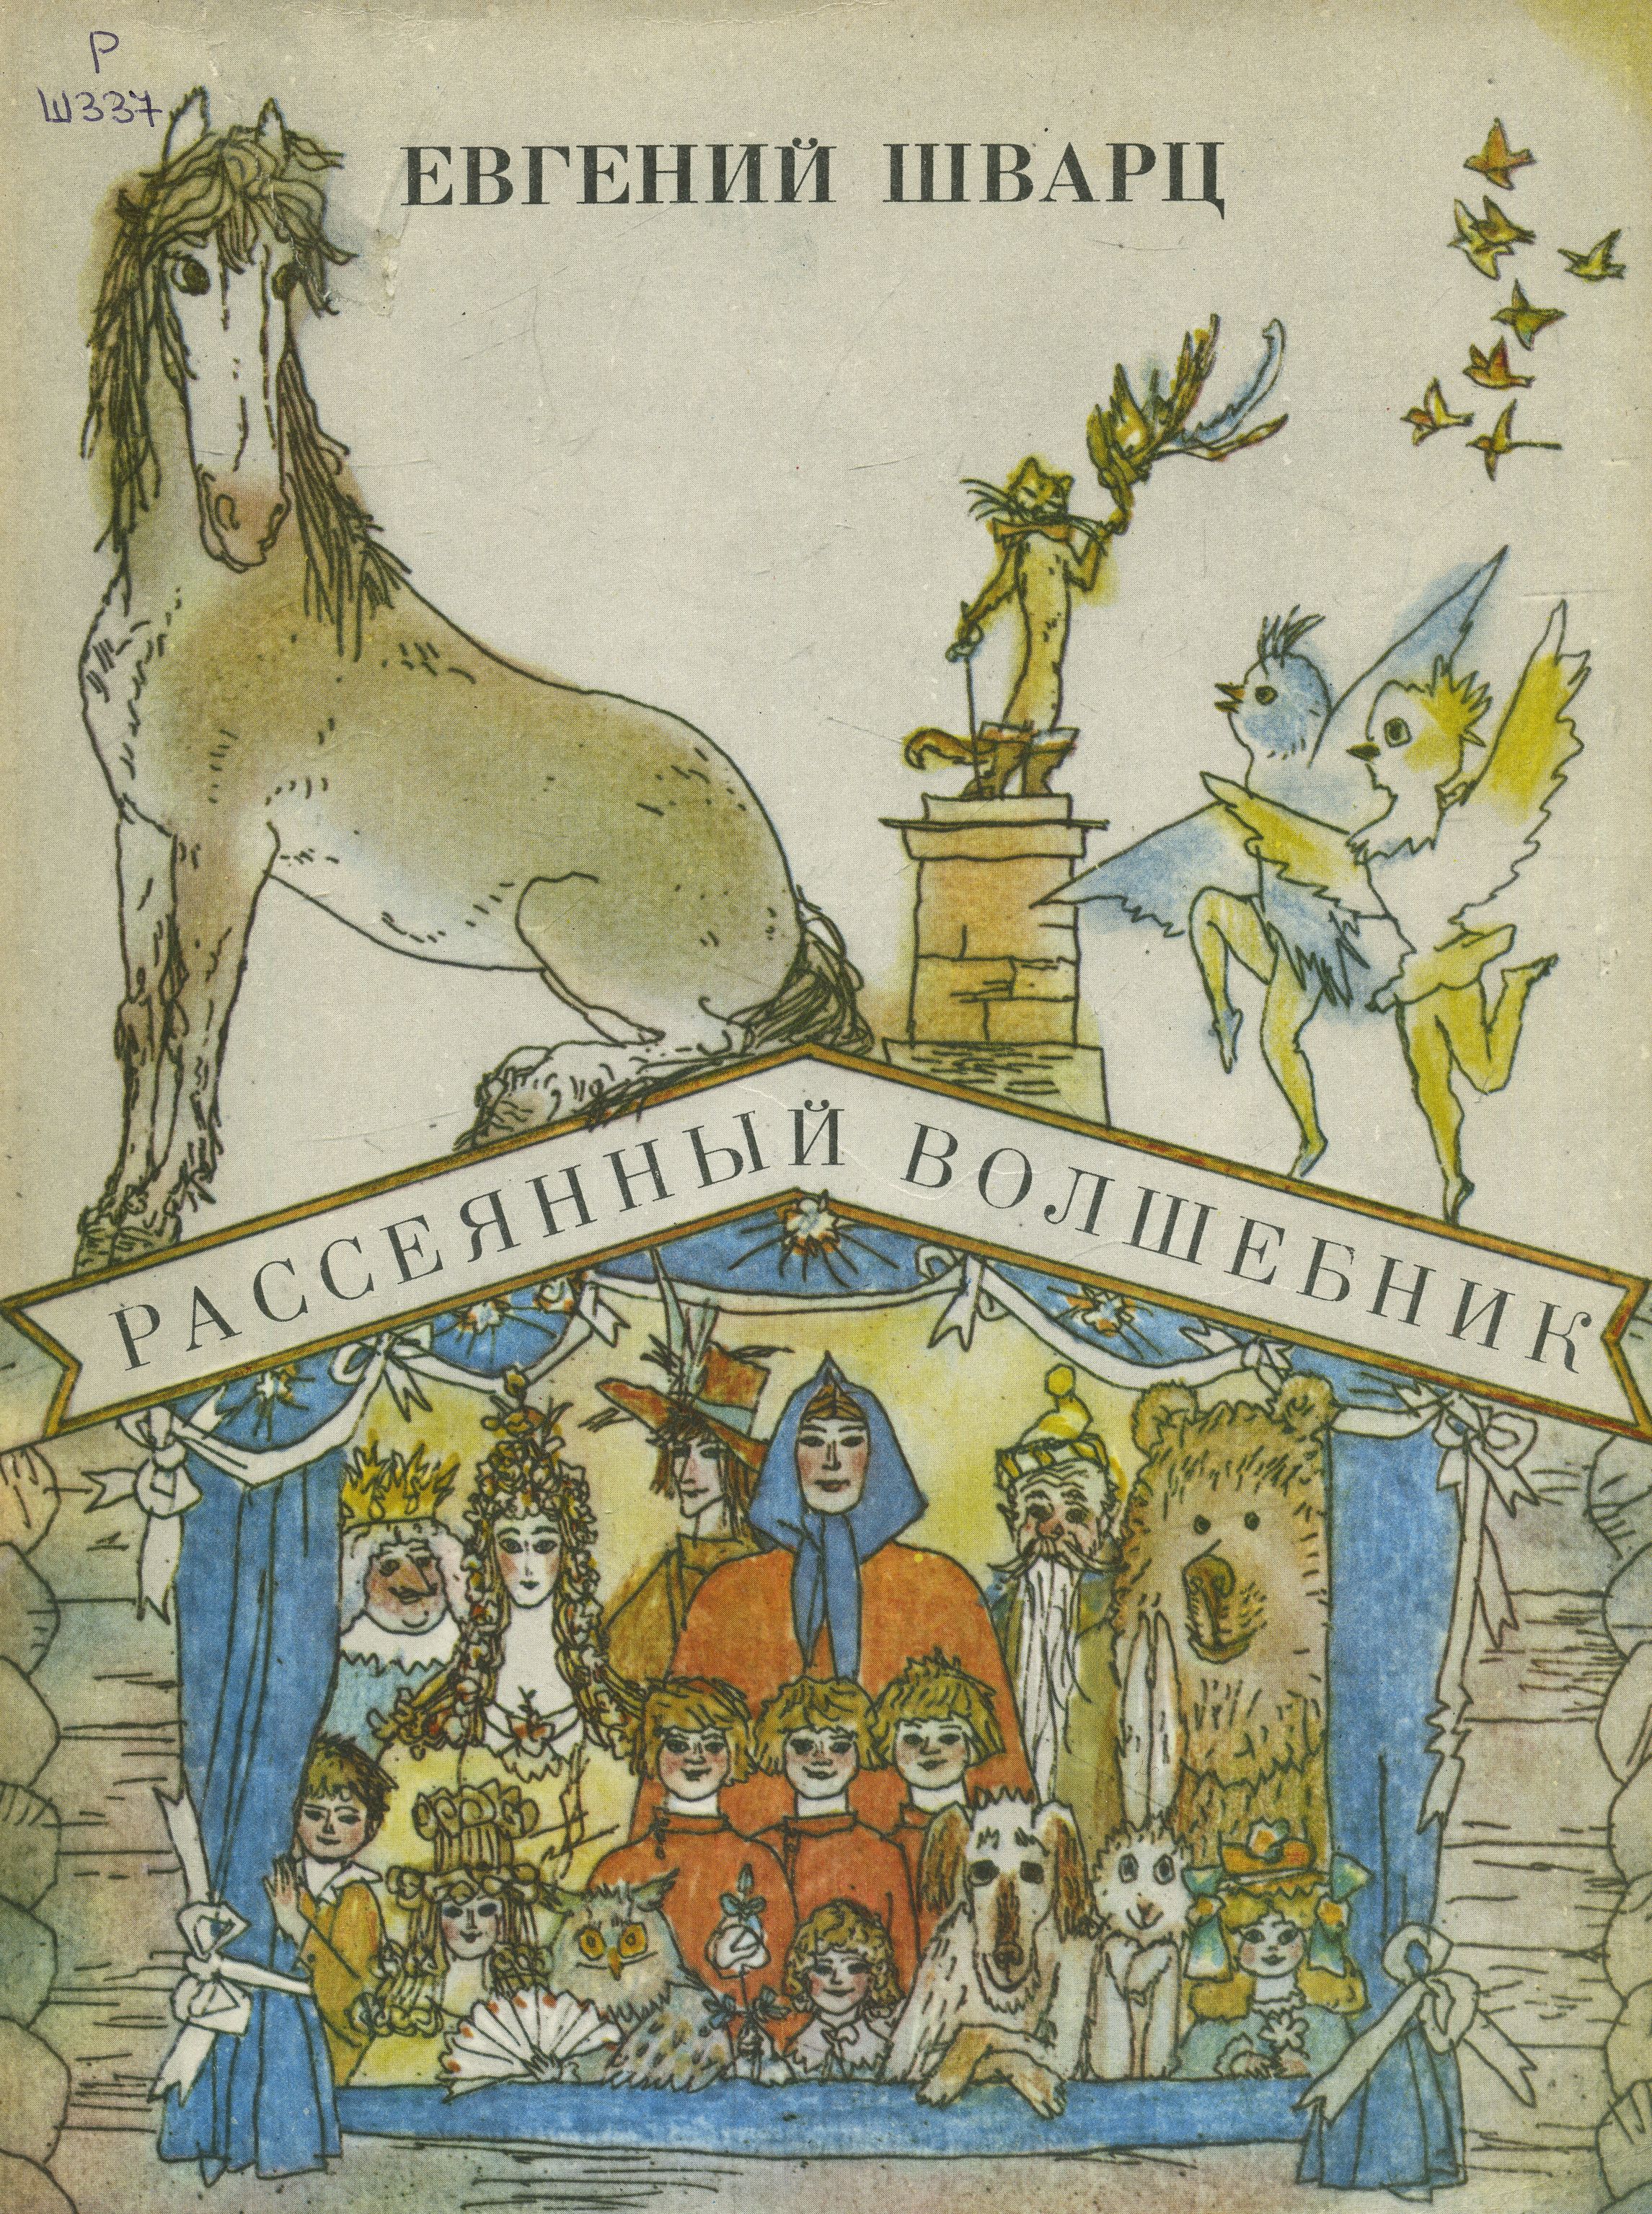 Рассеянный волшебник. сказки. сборник радиоспектаклей (1960, евгений шварц)